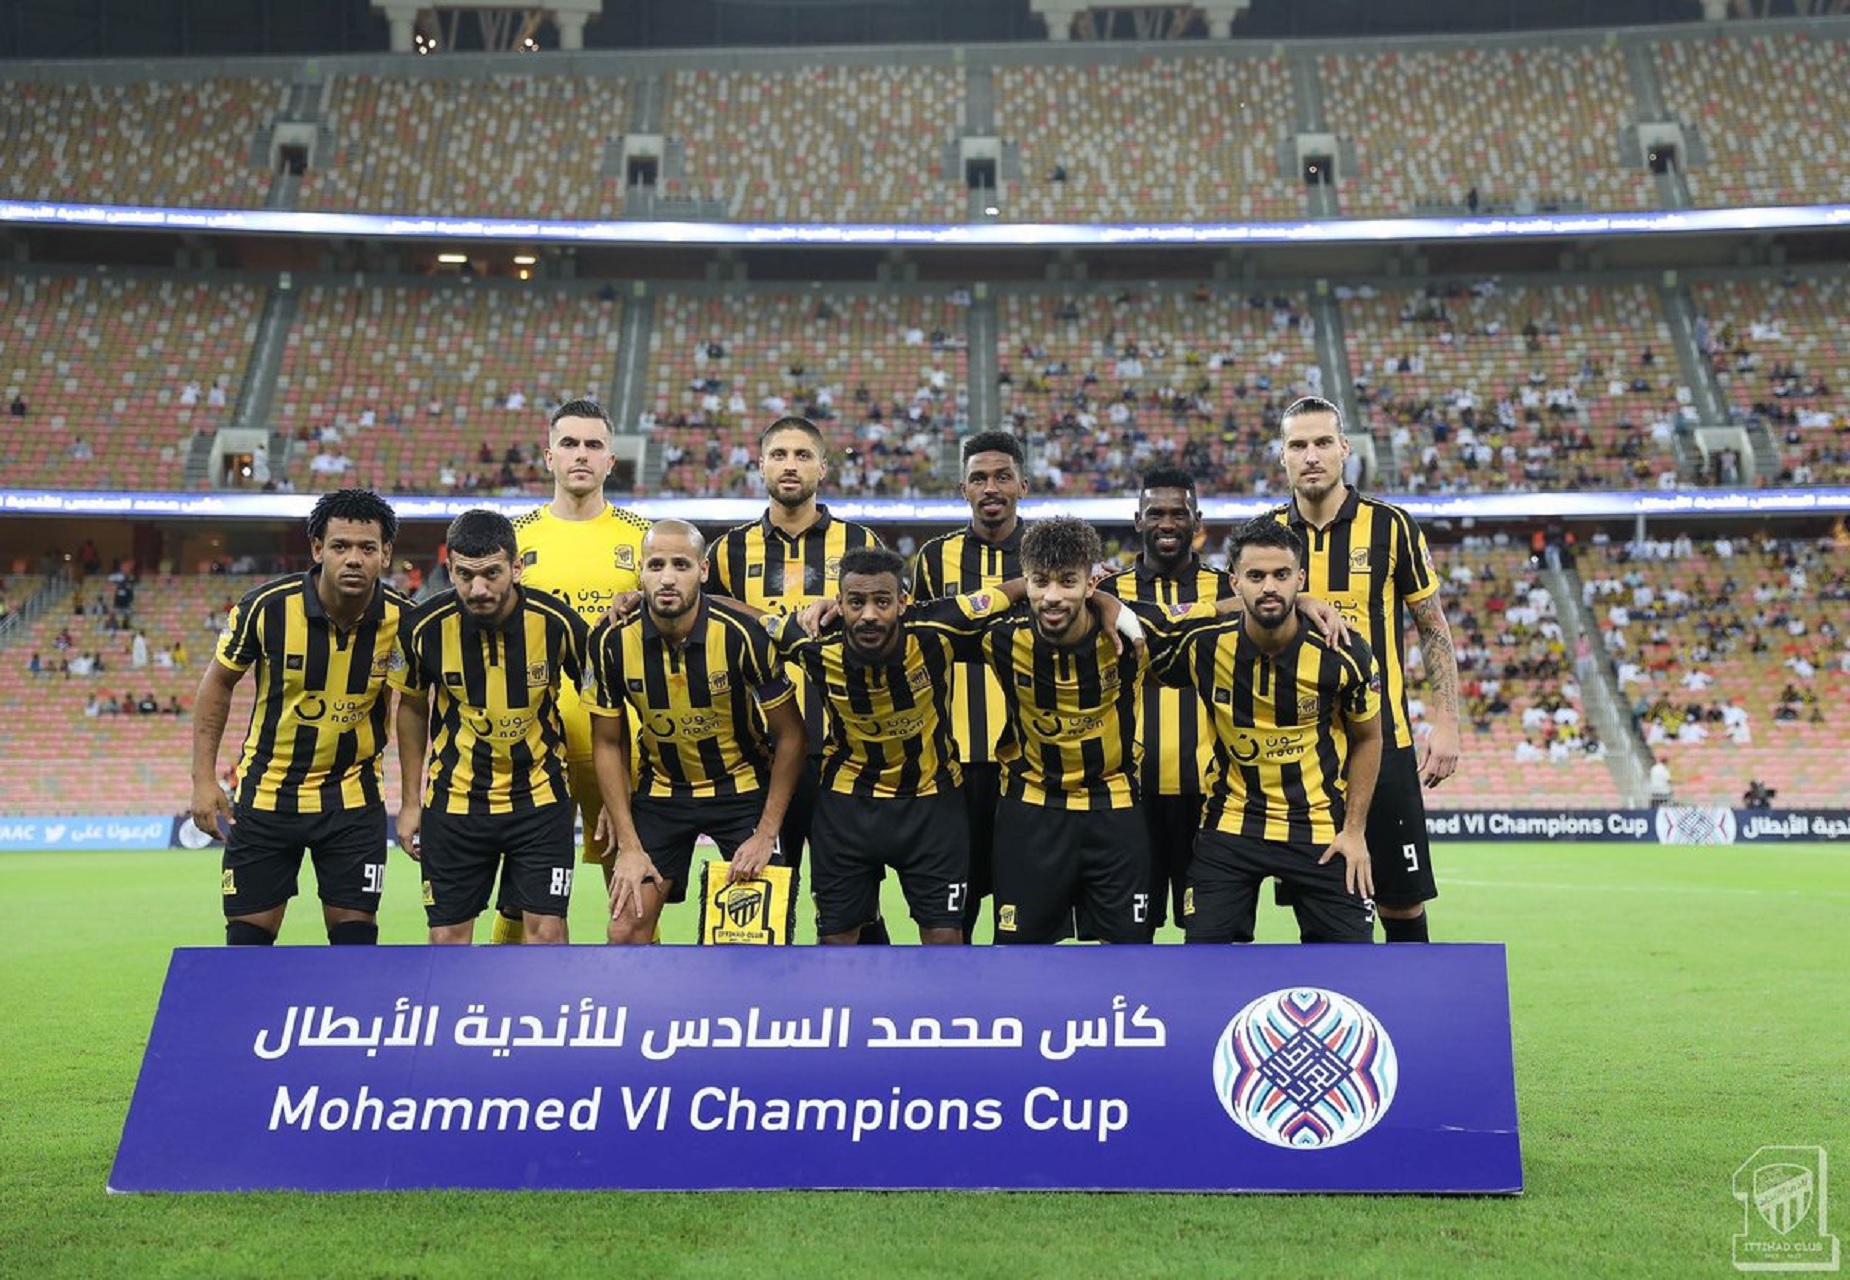 الاتحاد العربي يستهدف استكمال كأس محمد السادس